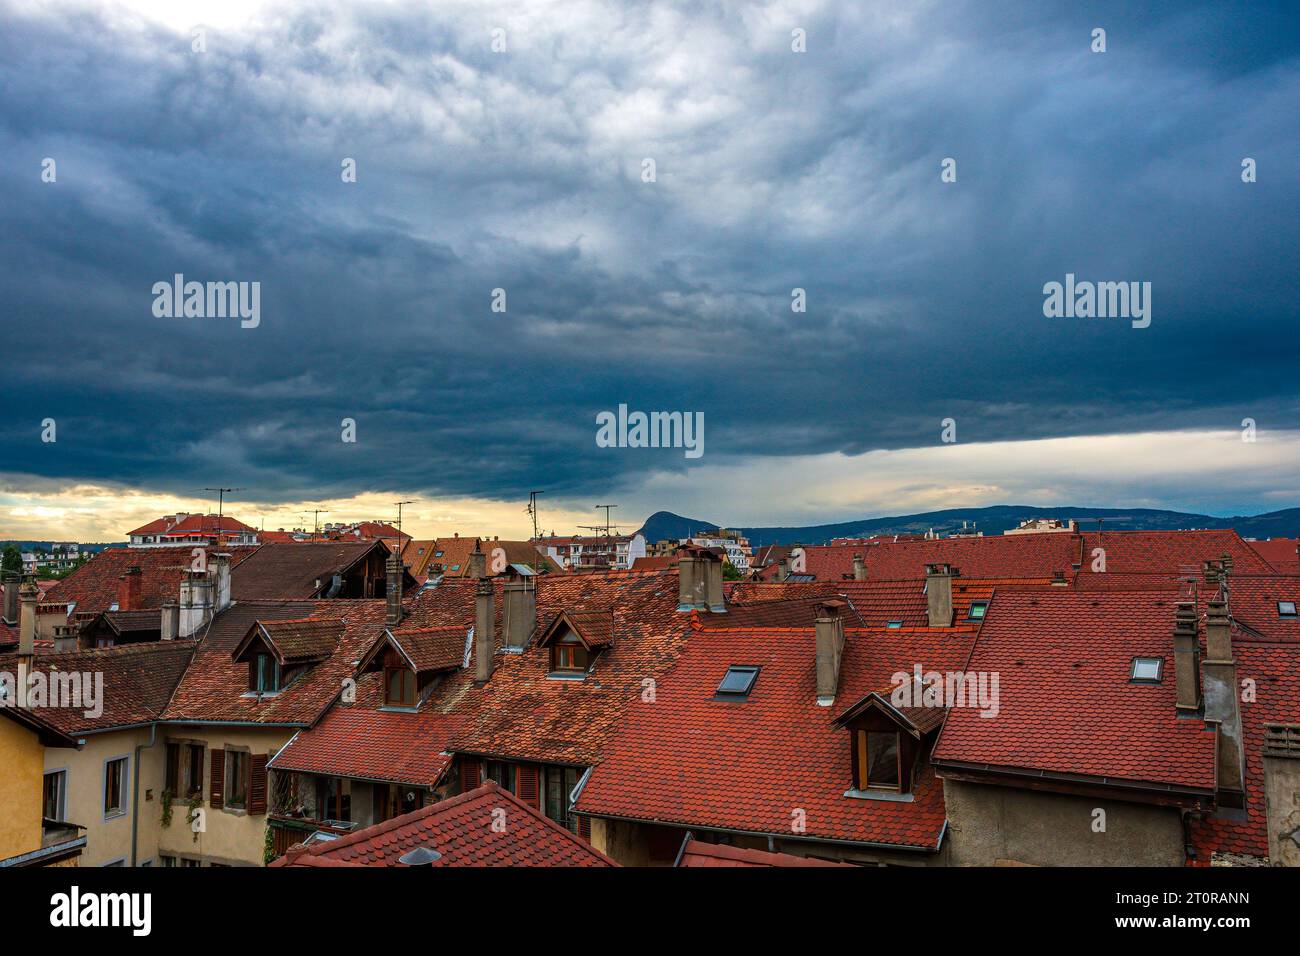 Toits de tuiles rouges dans la vieille ville contre un ciel nuageux dramatique à Annecy, haute Savoie, en France. Banque D'Images